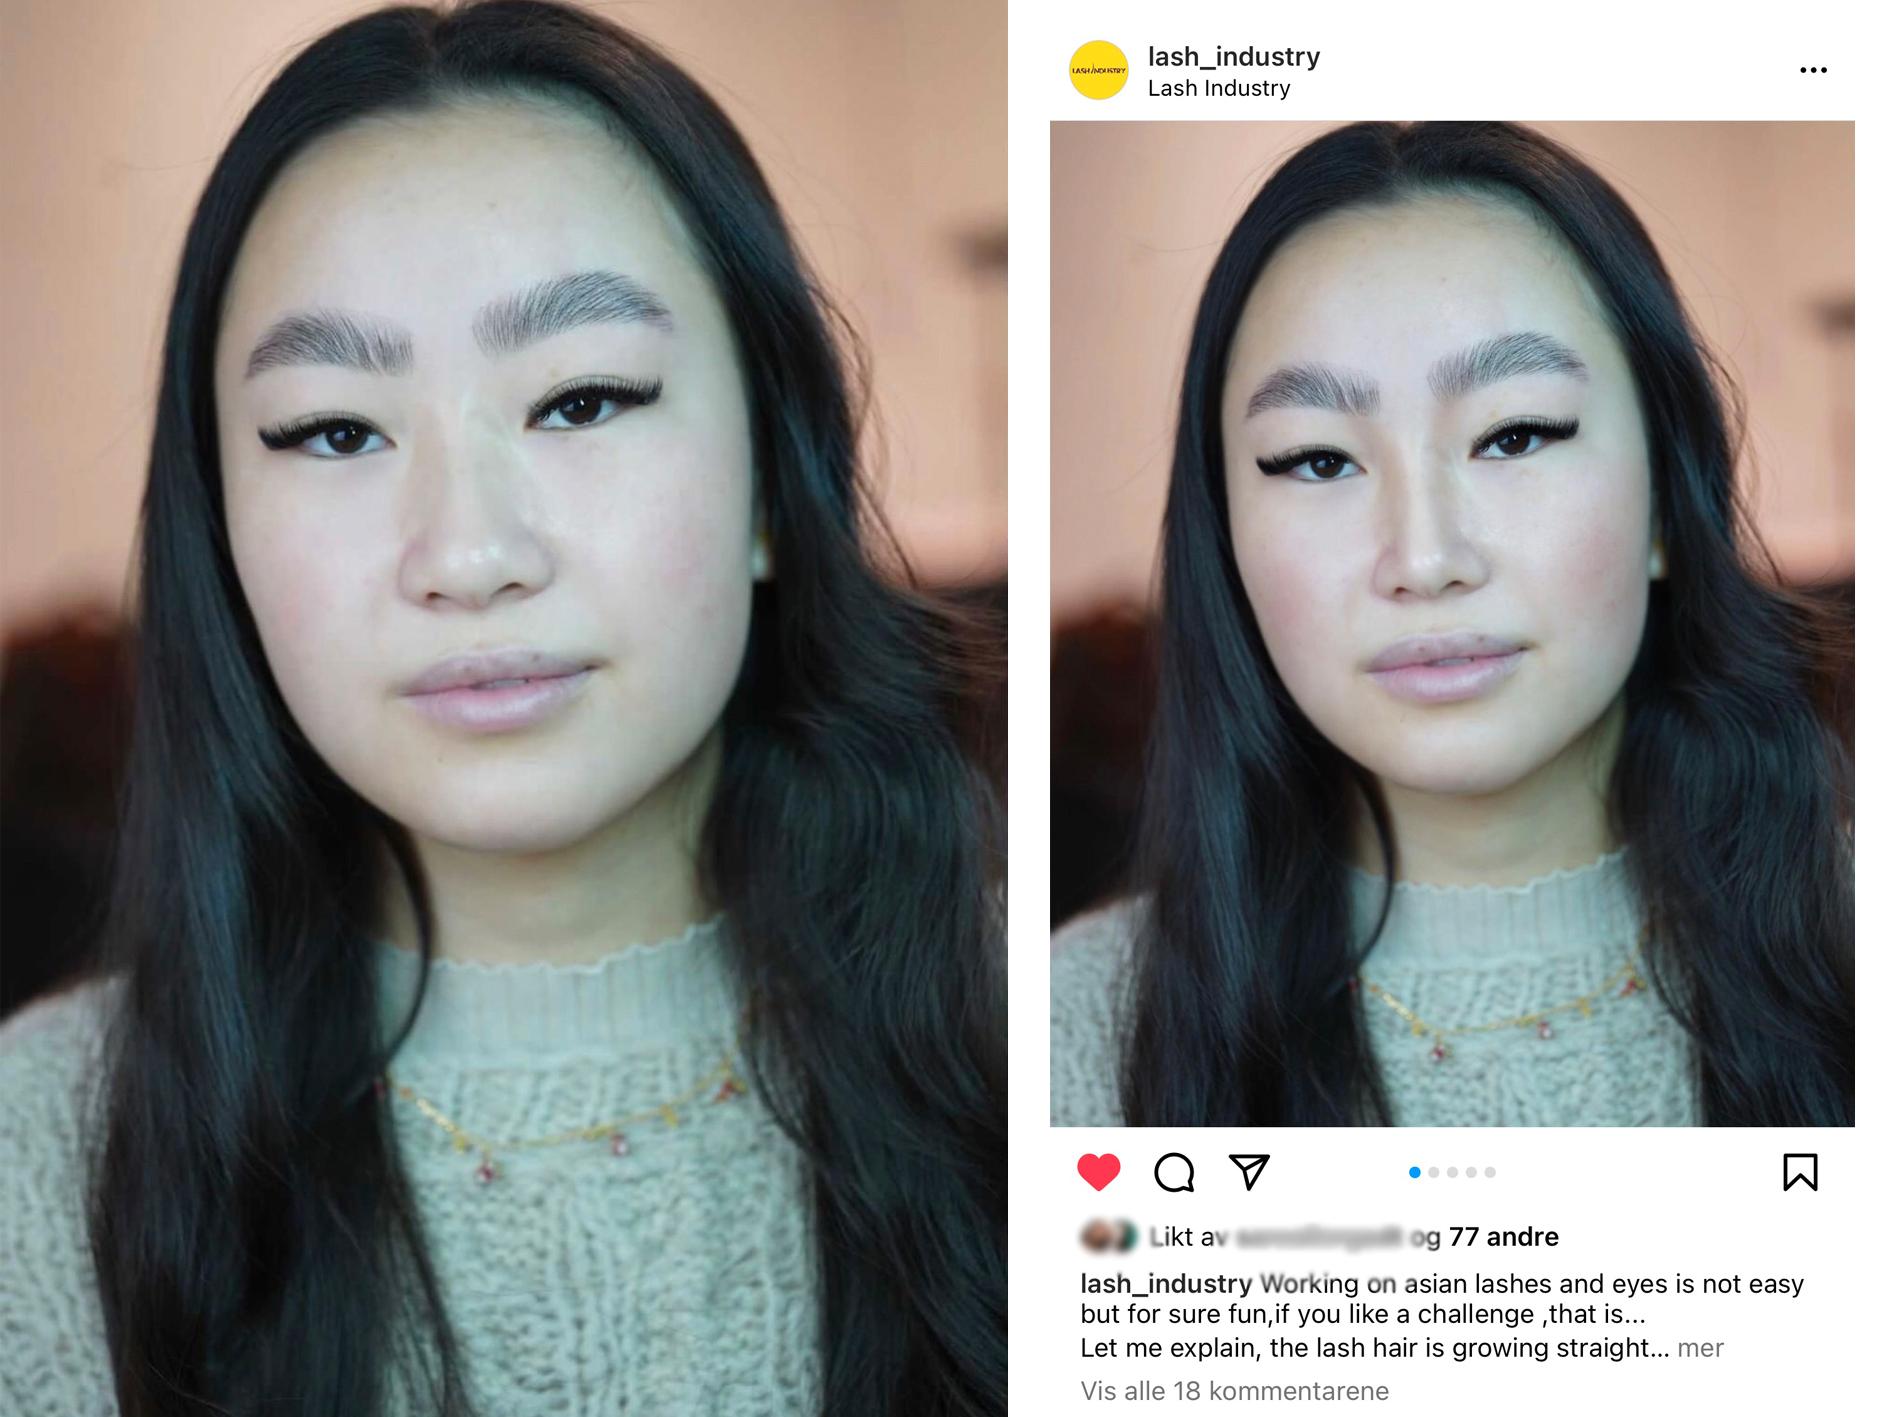 BLE FIKSET: Malin Skalle opplevde at ansiktet hennes ble redigert i reklamering for en skjønnhetsbehandling. Det første bildet fikk Skalle tilsendt. Det andre bildet ble postet på Instagram. Salongen sier de har redigert bildet for å fremheve vippene. 